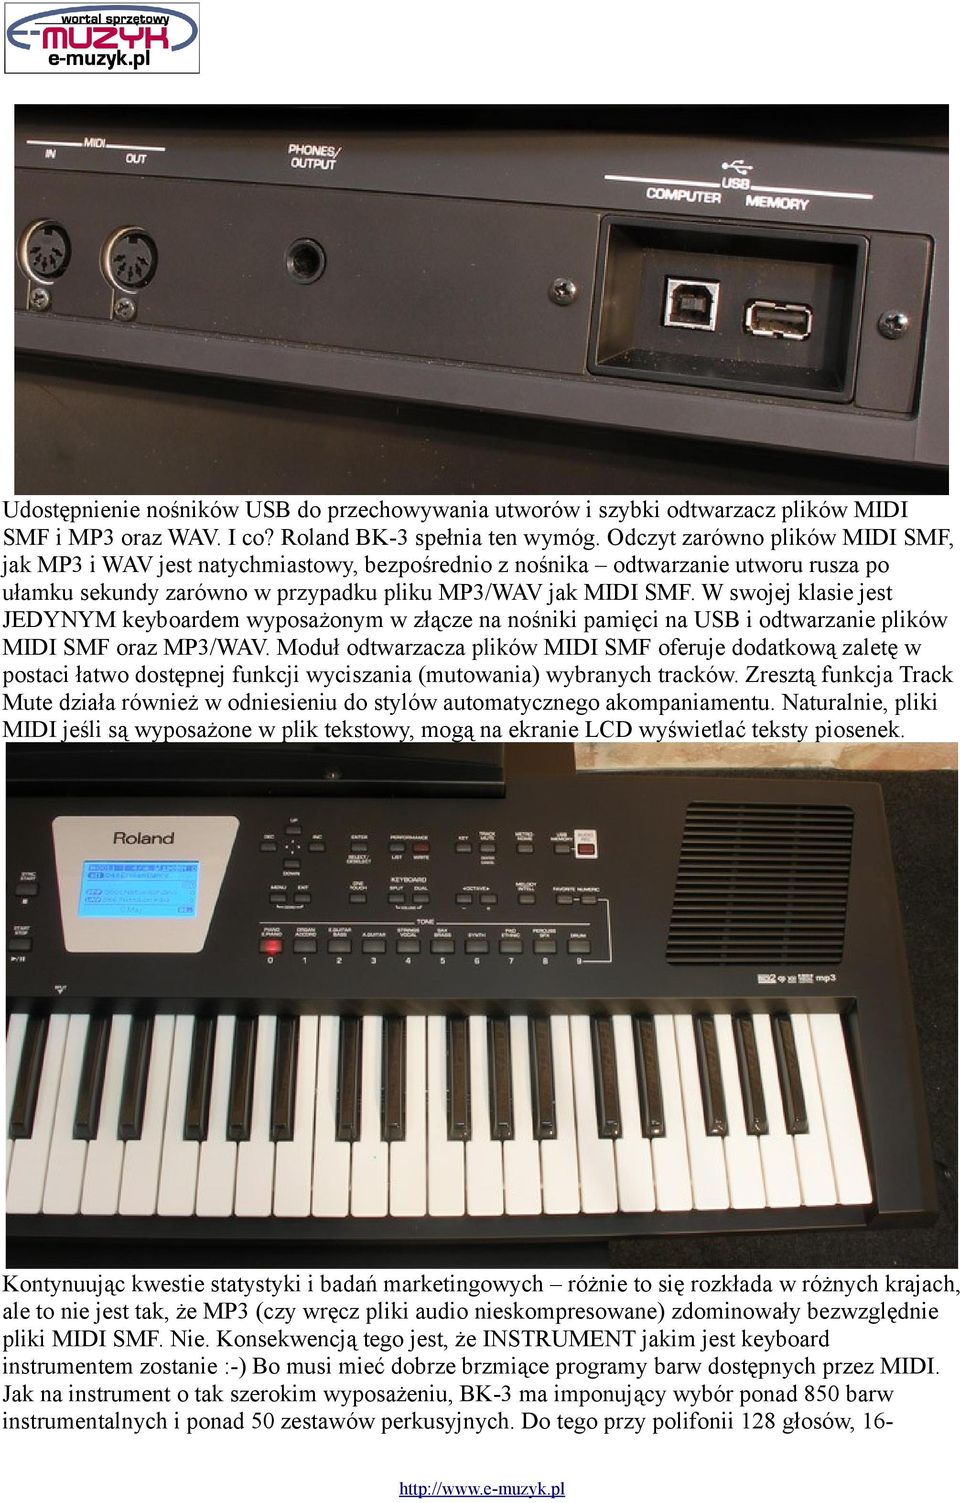 W swojej klasie jest JEDYNYM keyboardem wyposażonym w złącze na nośniki pamięci na USB i odtwarzanie plików MIDI SMF oraz MP3/WAV.